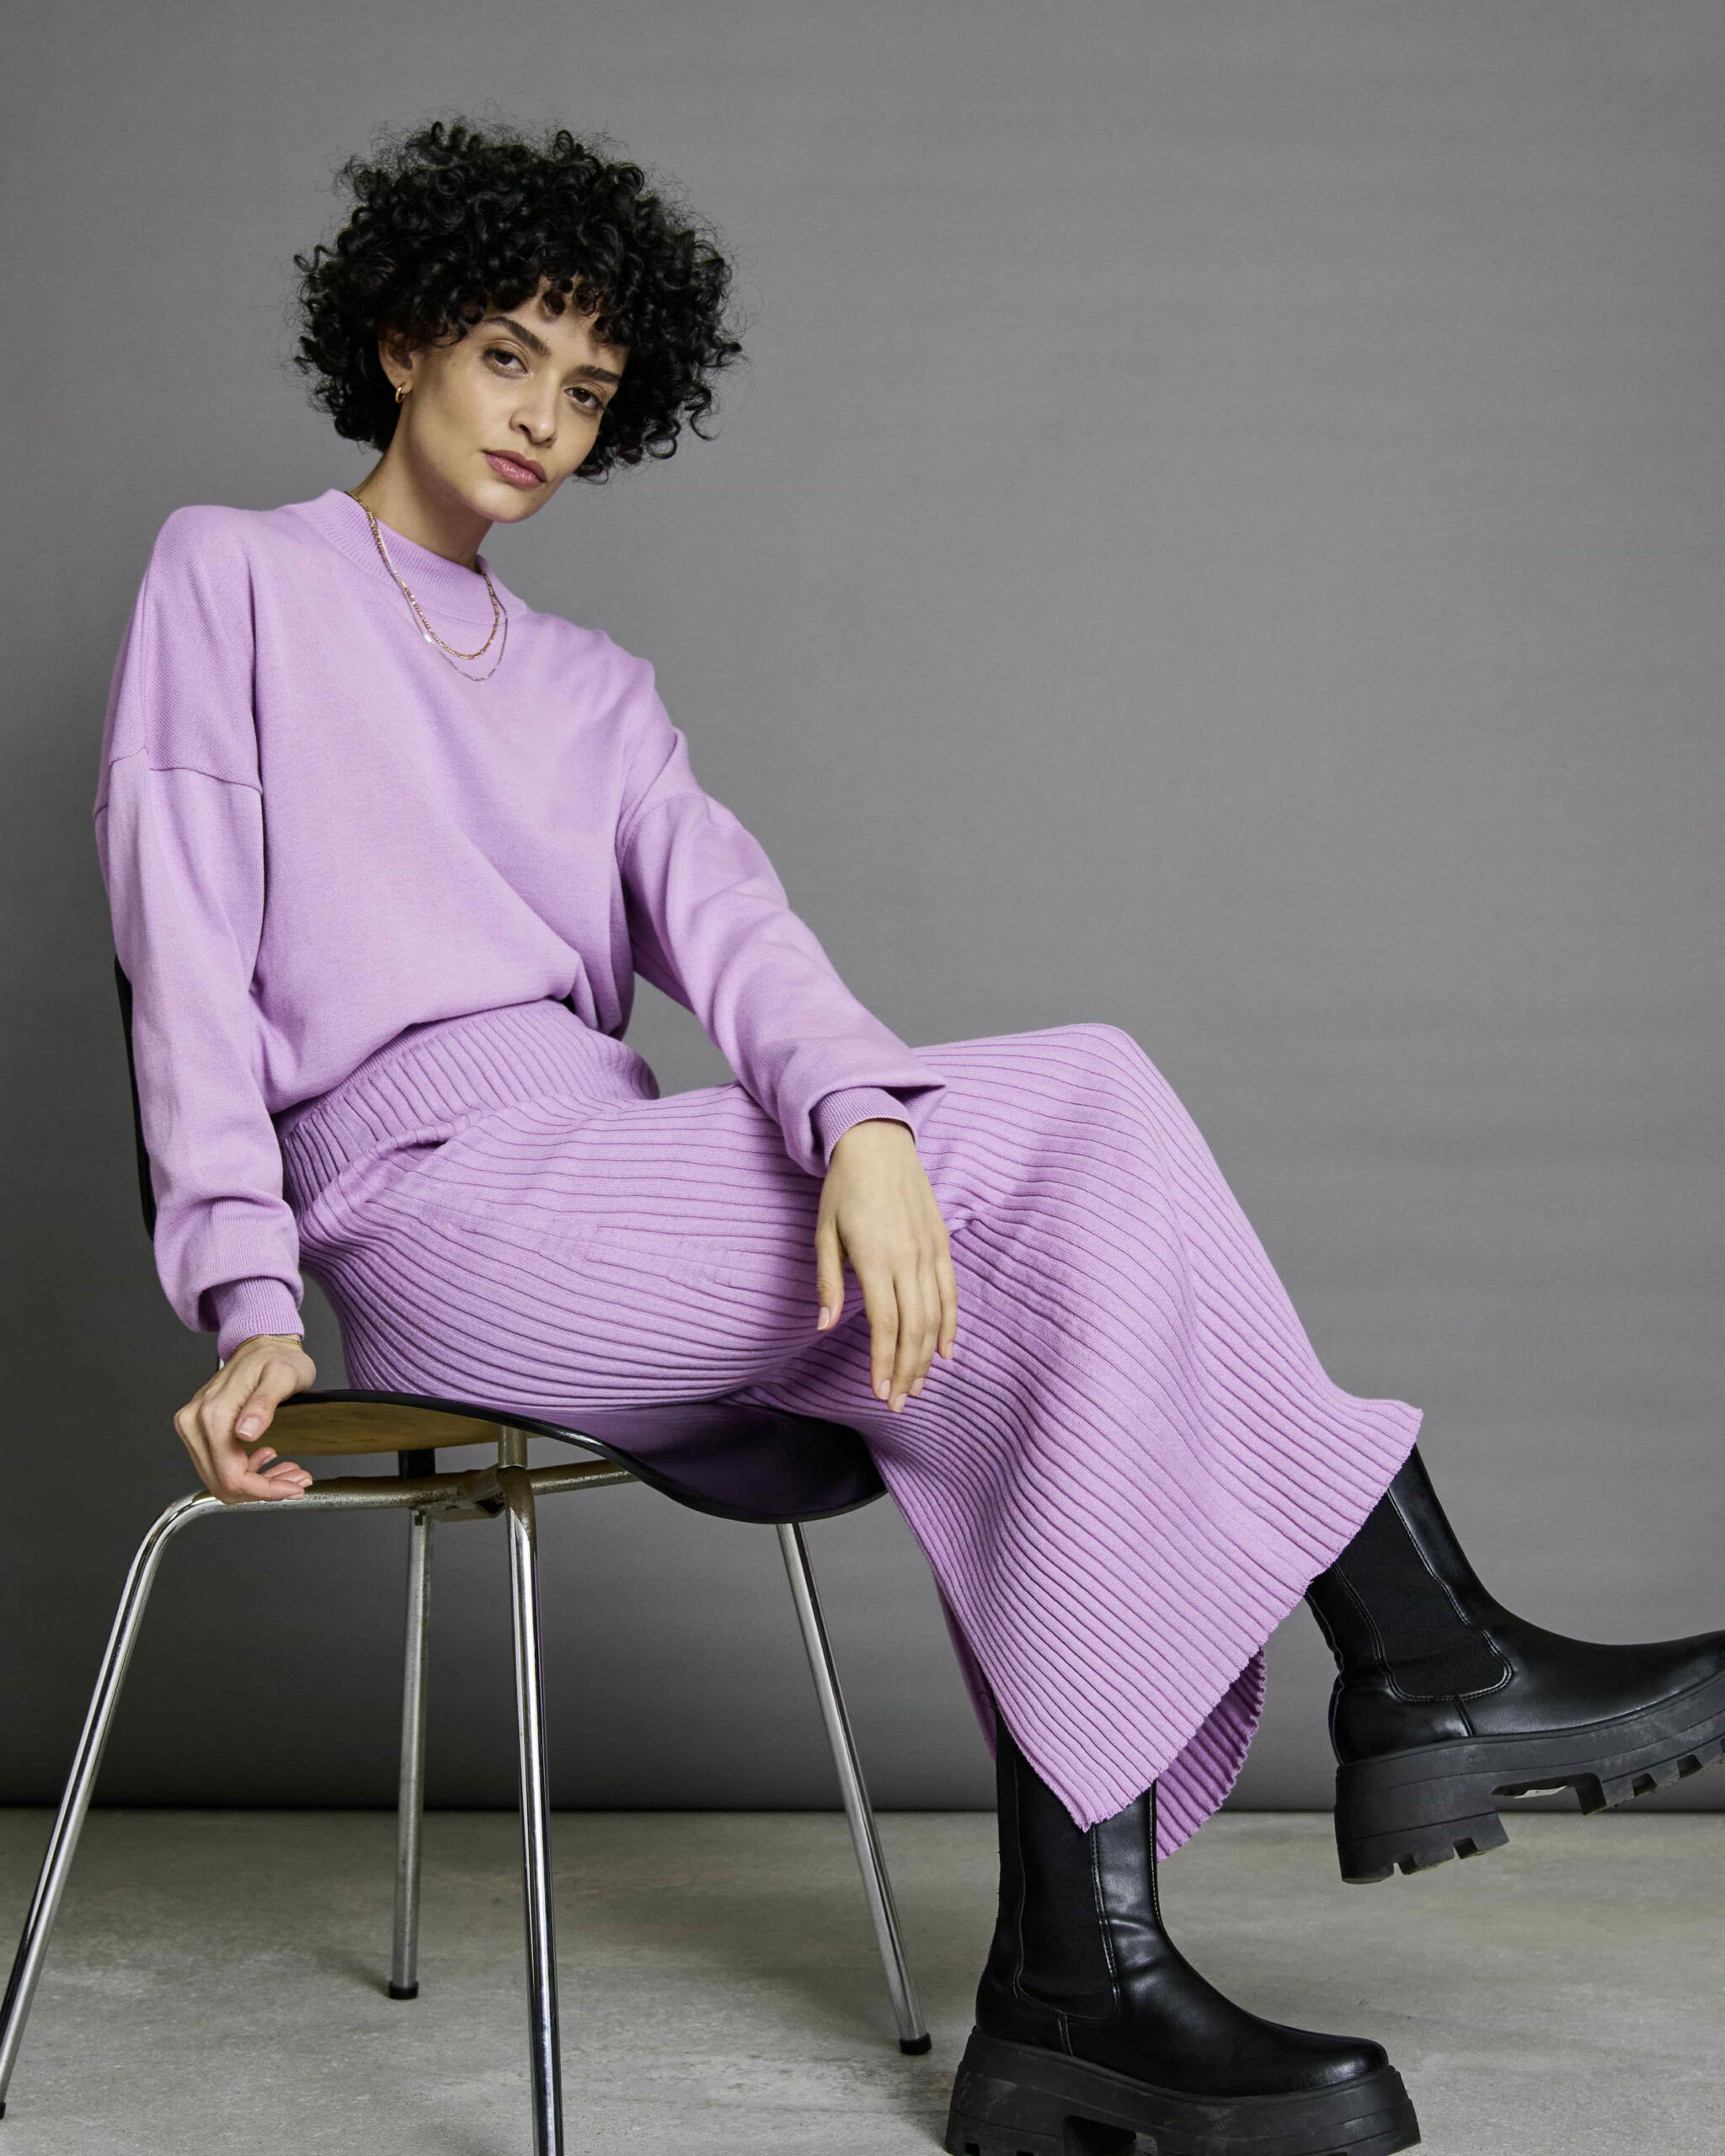 Ein Model mit schwarzen Haaren sitzt auf eine Stuhl und präsentiert fliederfarbene Mode